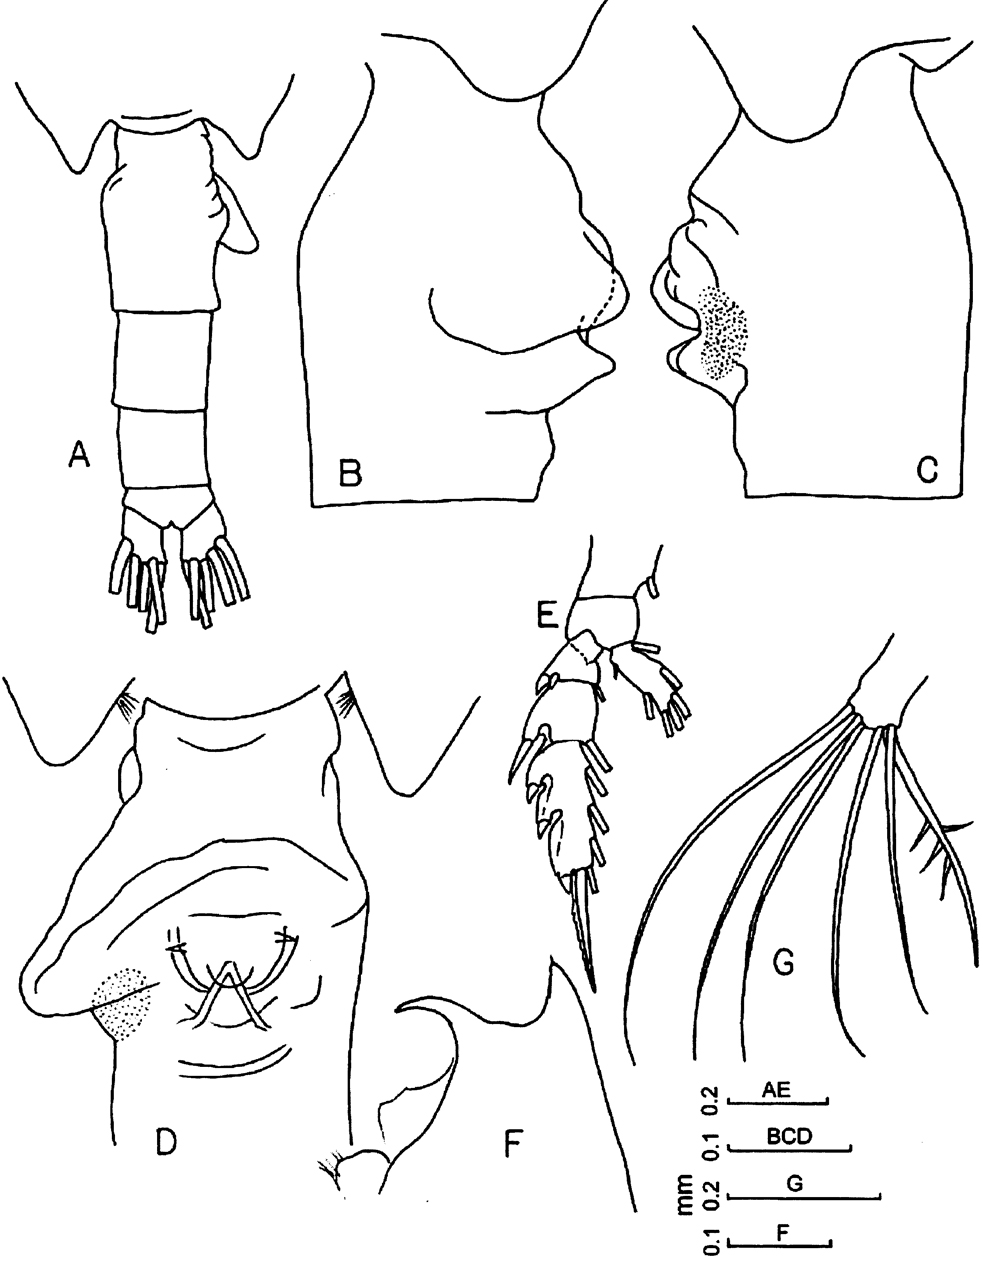 Espèce Euchaeta concinna - Planche 15 de figures morphologiques